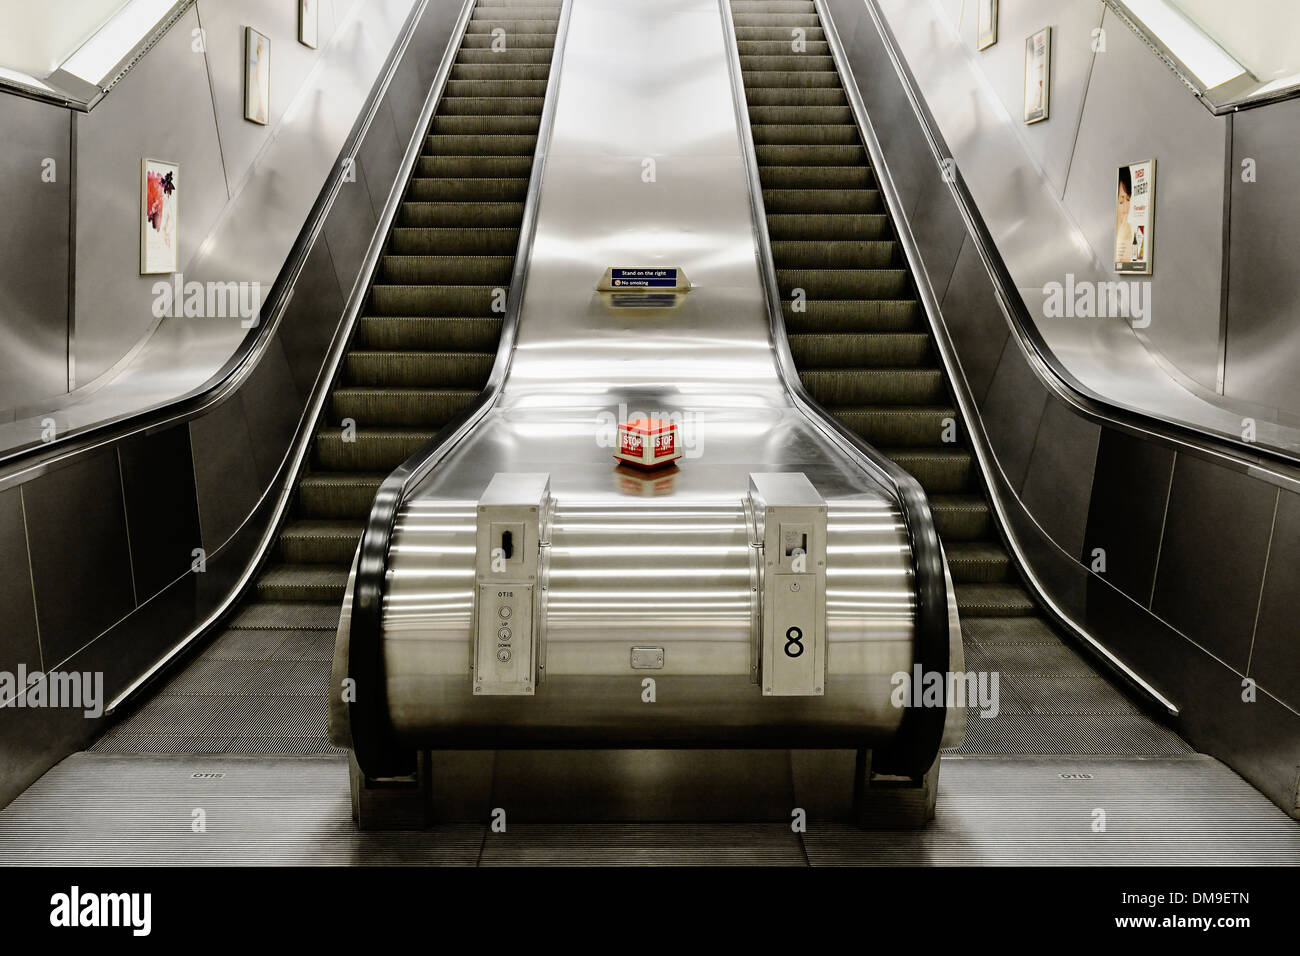 Escaliers mécaniques dans une station de métro, Londres, Royaume-Uni. Banque D'Images